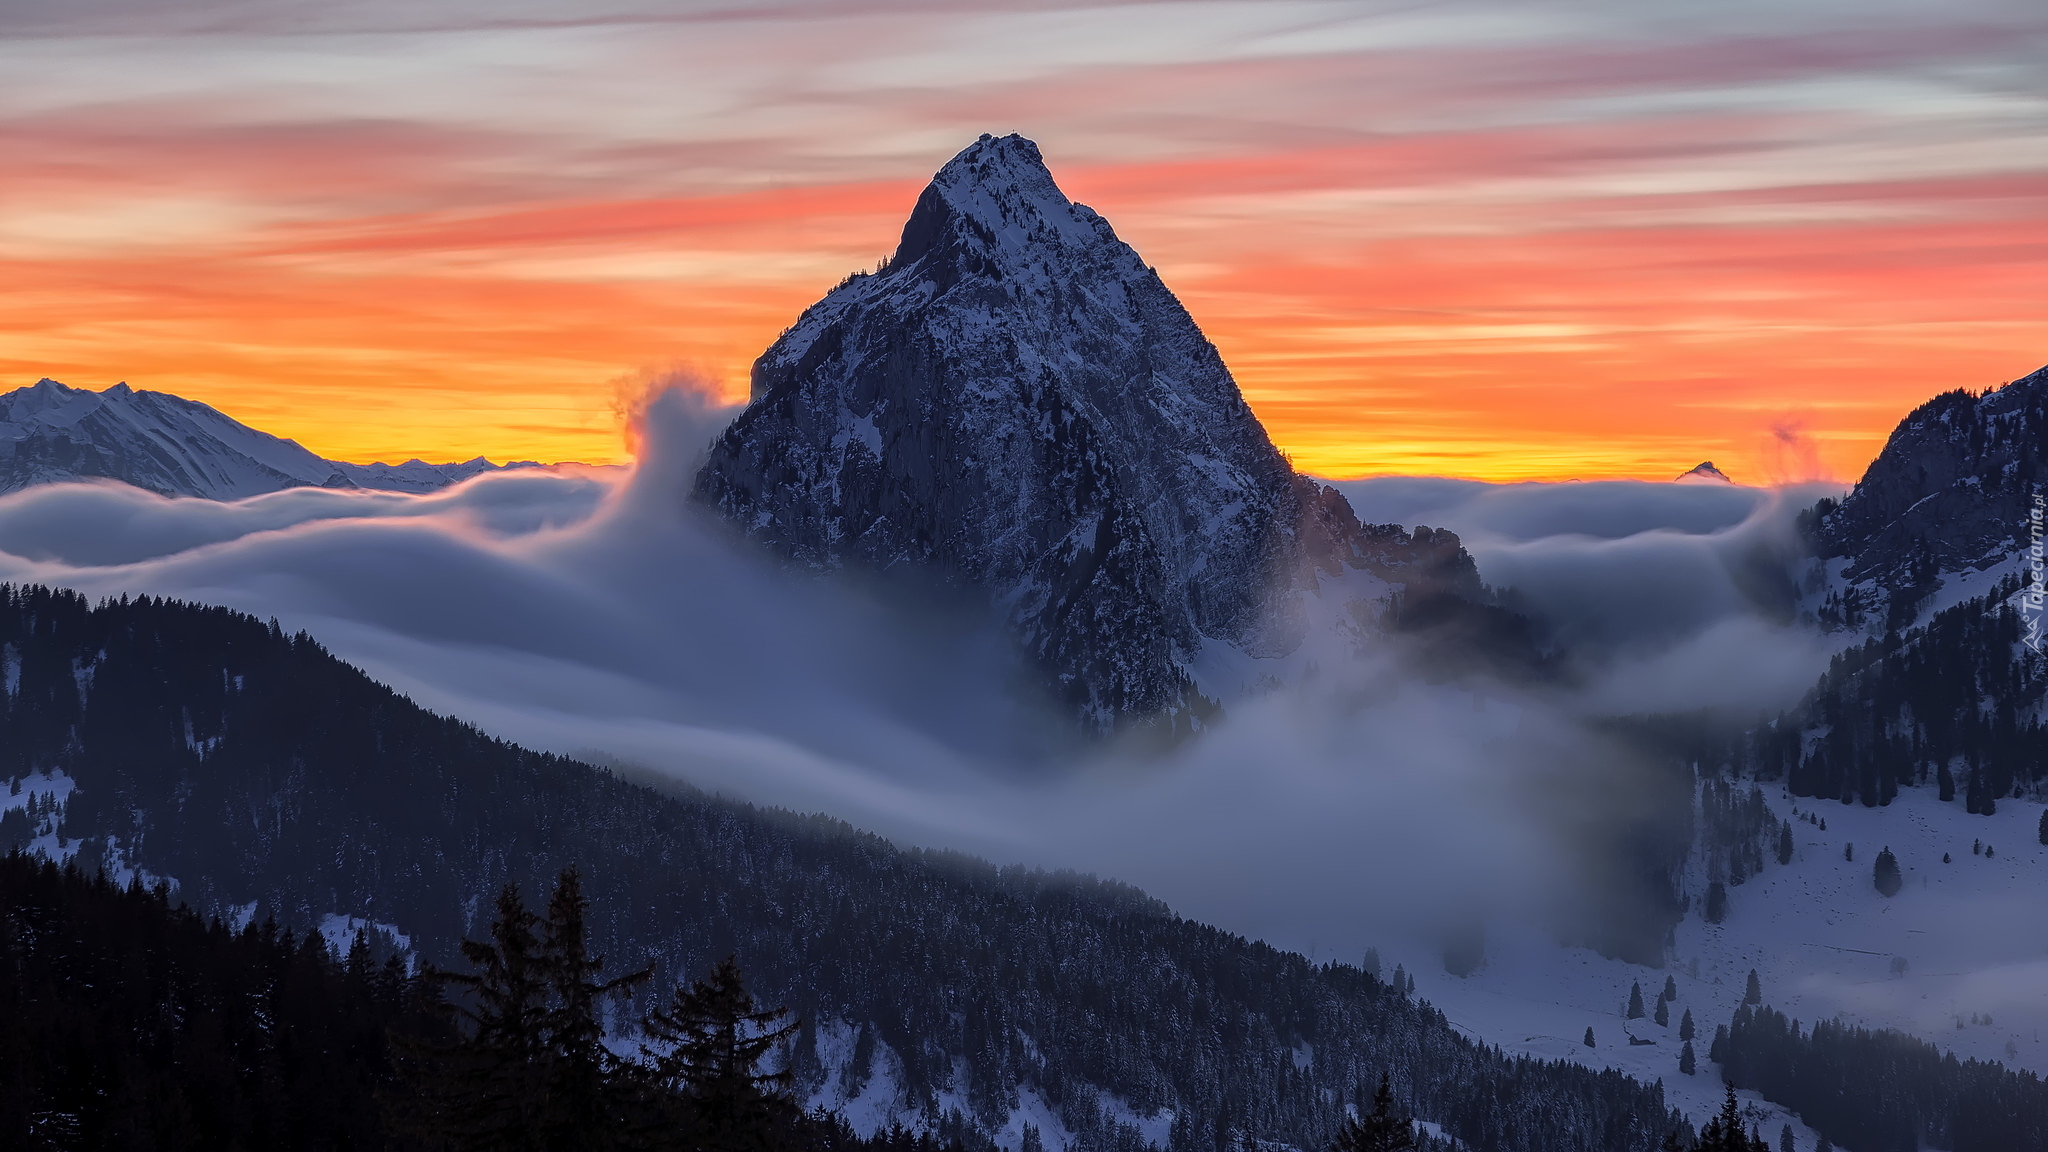 Góry, Alpy, Góra Grosser Mythen, Mgła, Zachód słońca, Szwajcaria